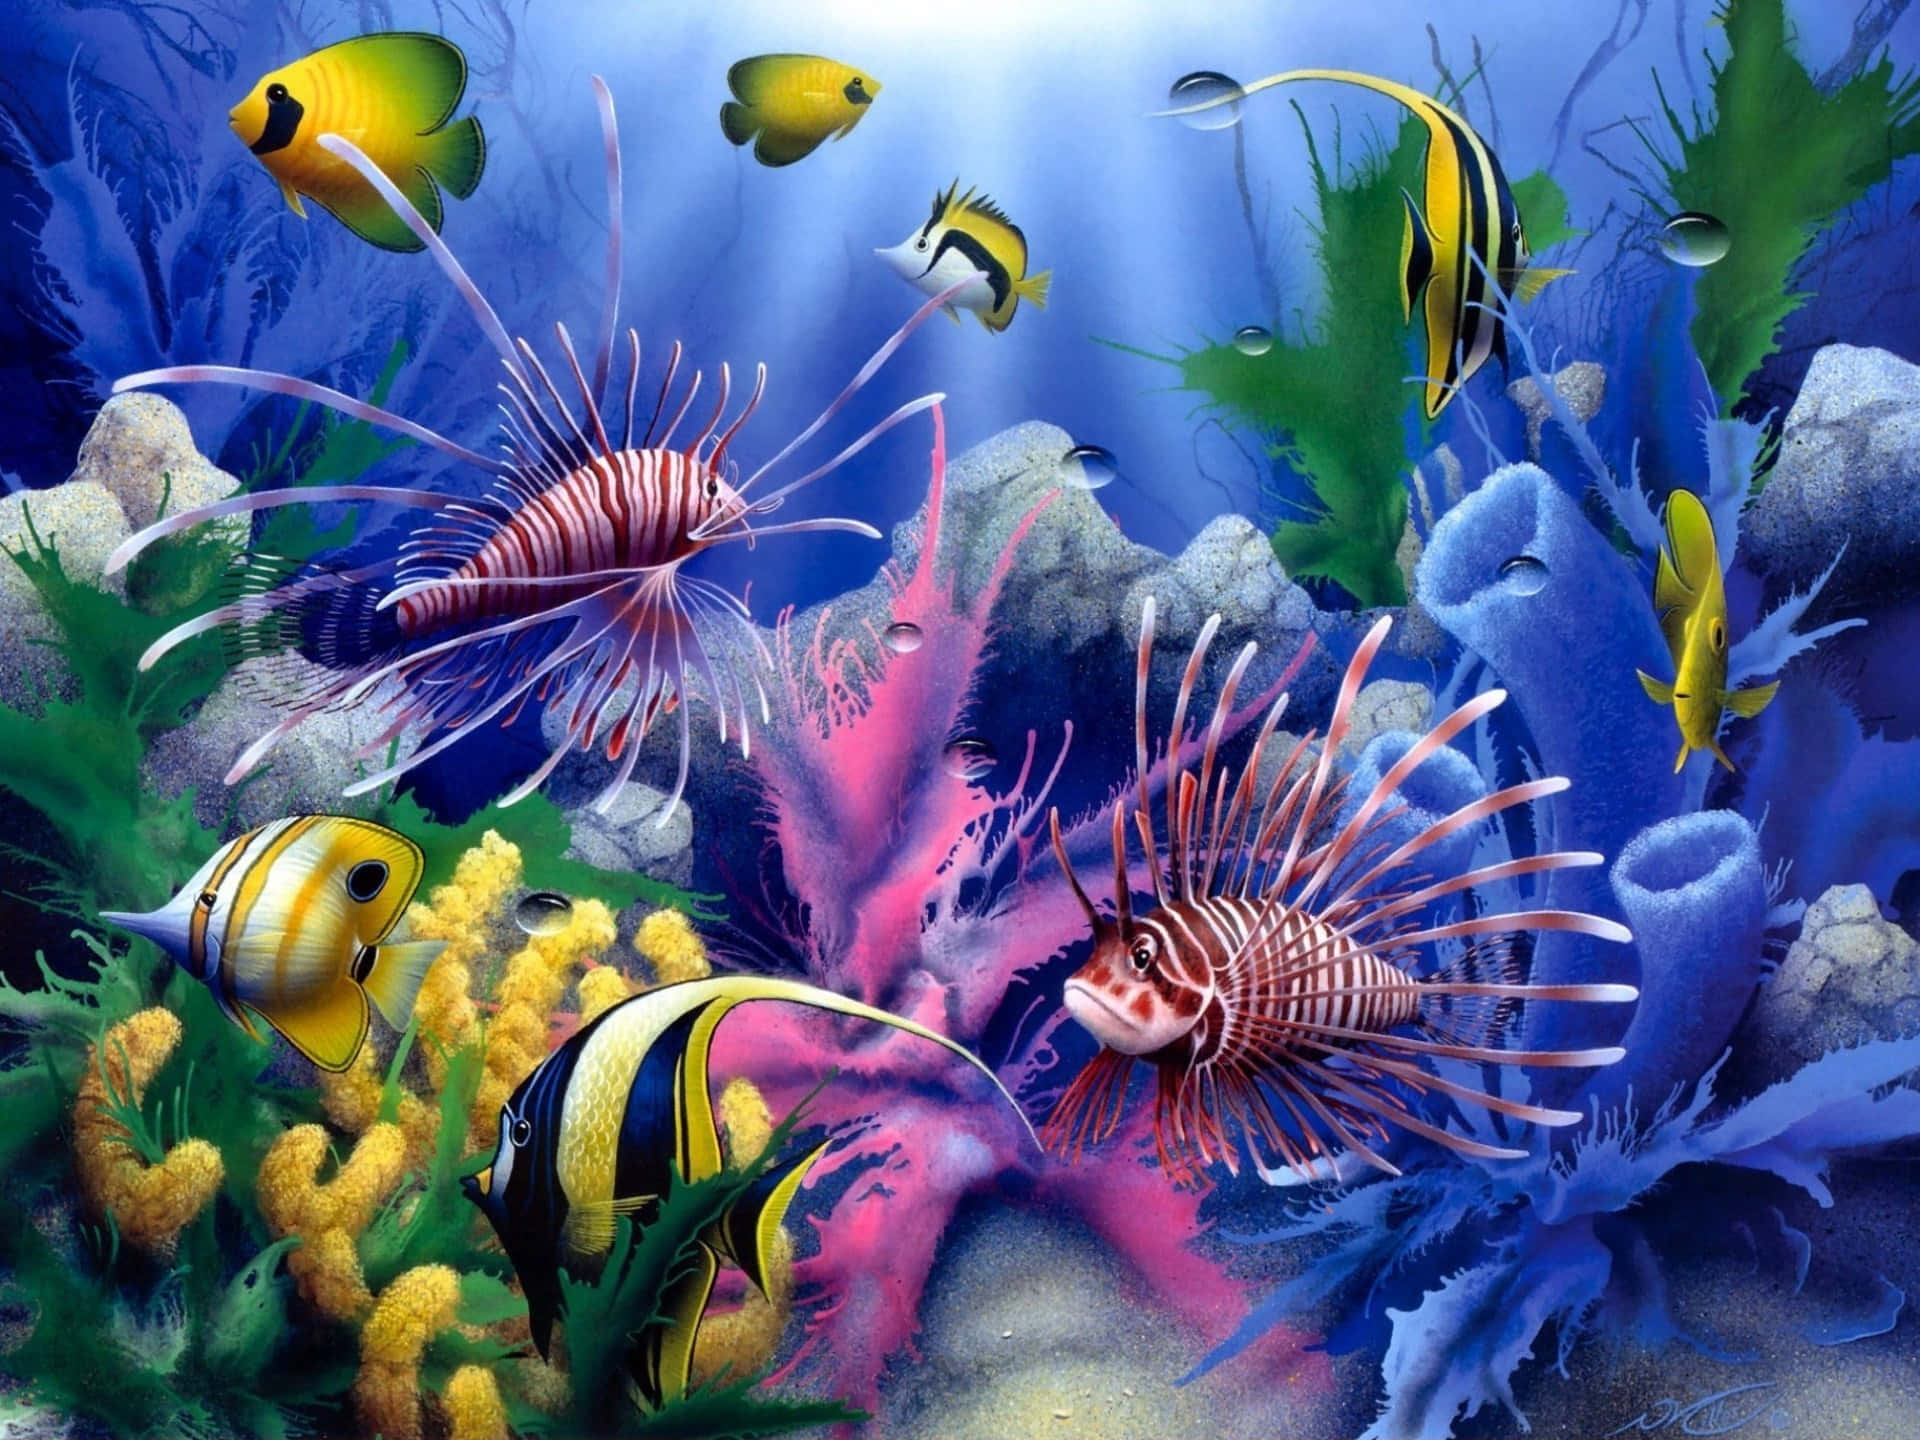 Caption: Dazzling 3D representation of aquatic life Wallpaper